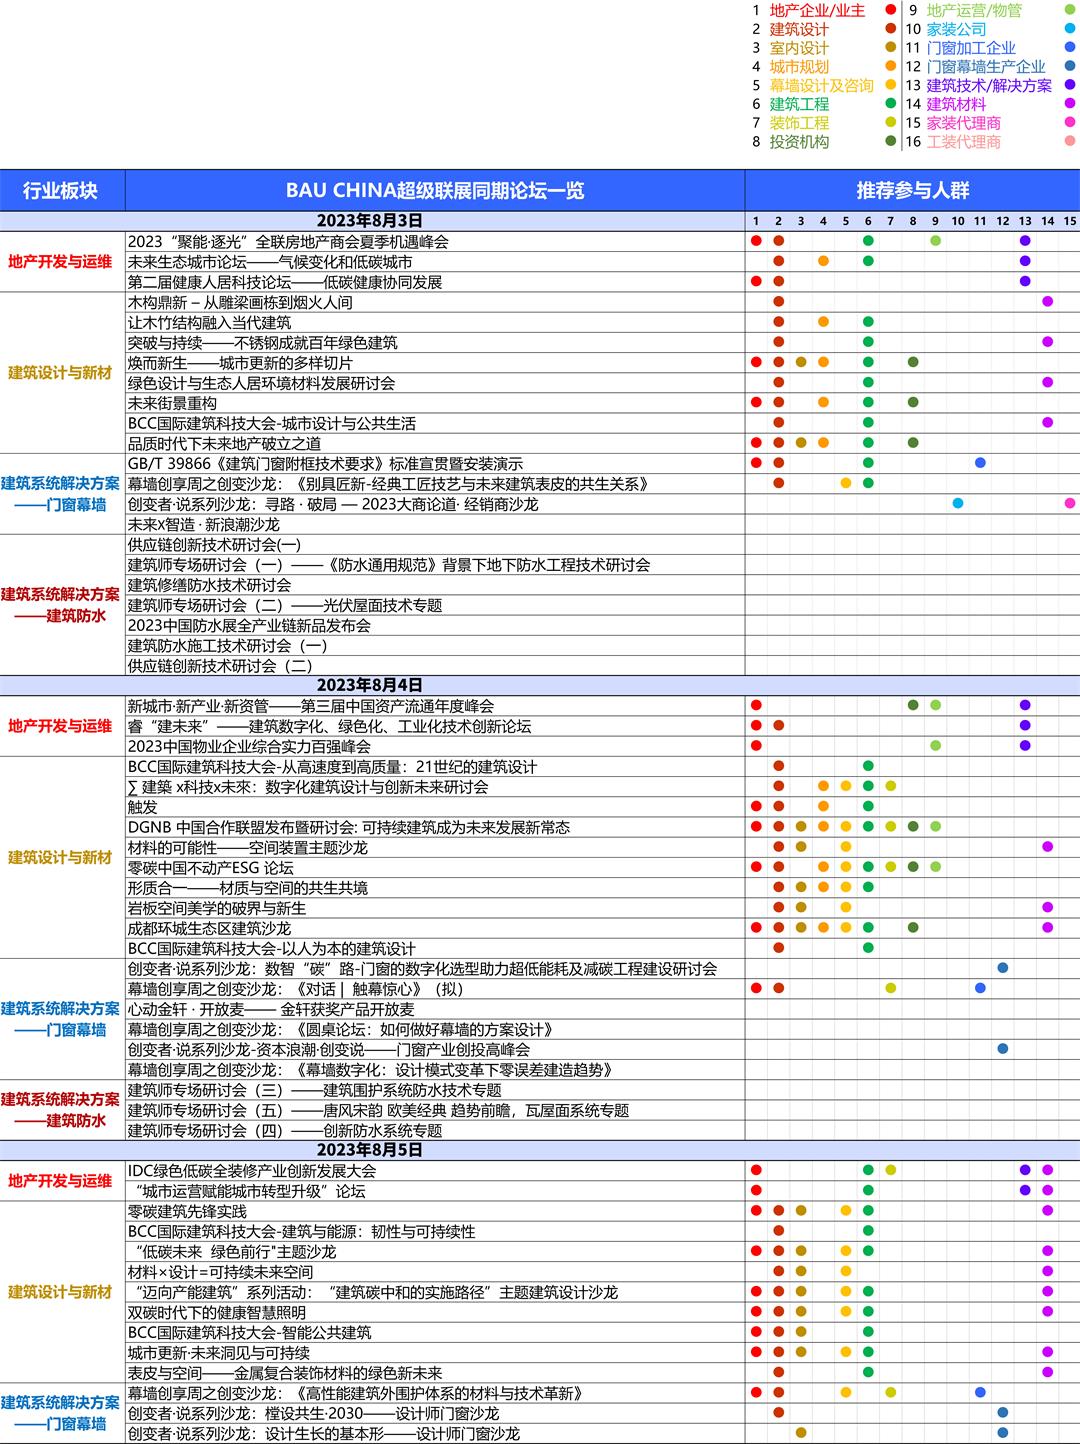 中英文-BAU CHINA 推文用活动大表的_中文 人群 整合版 图例.jpg